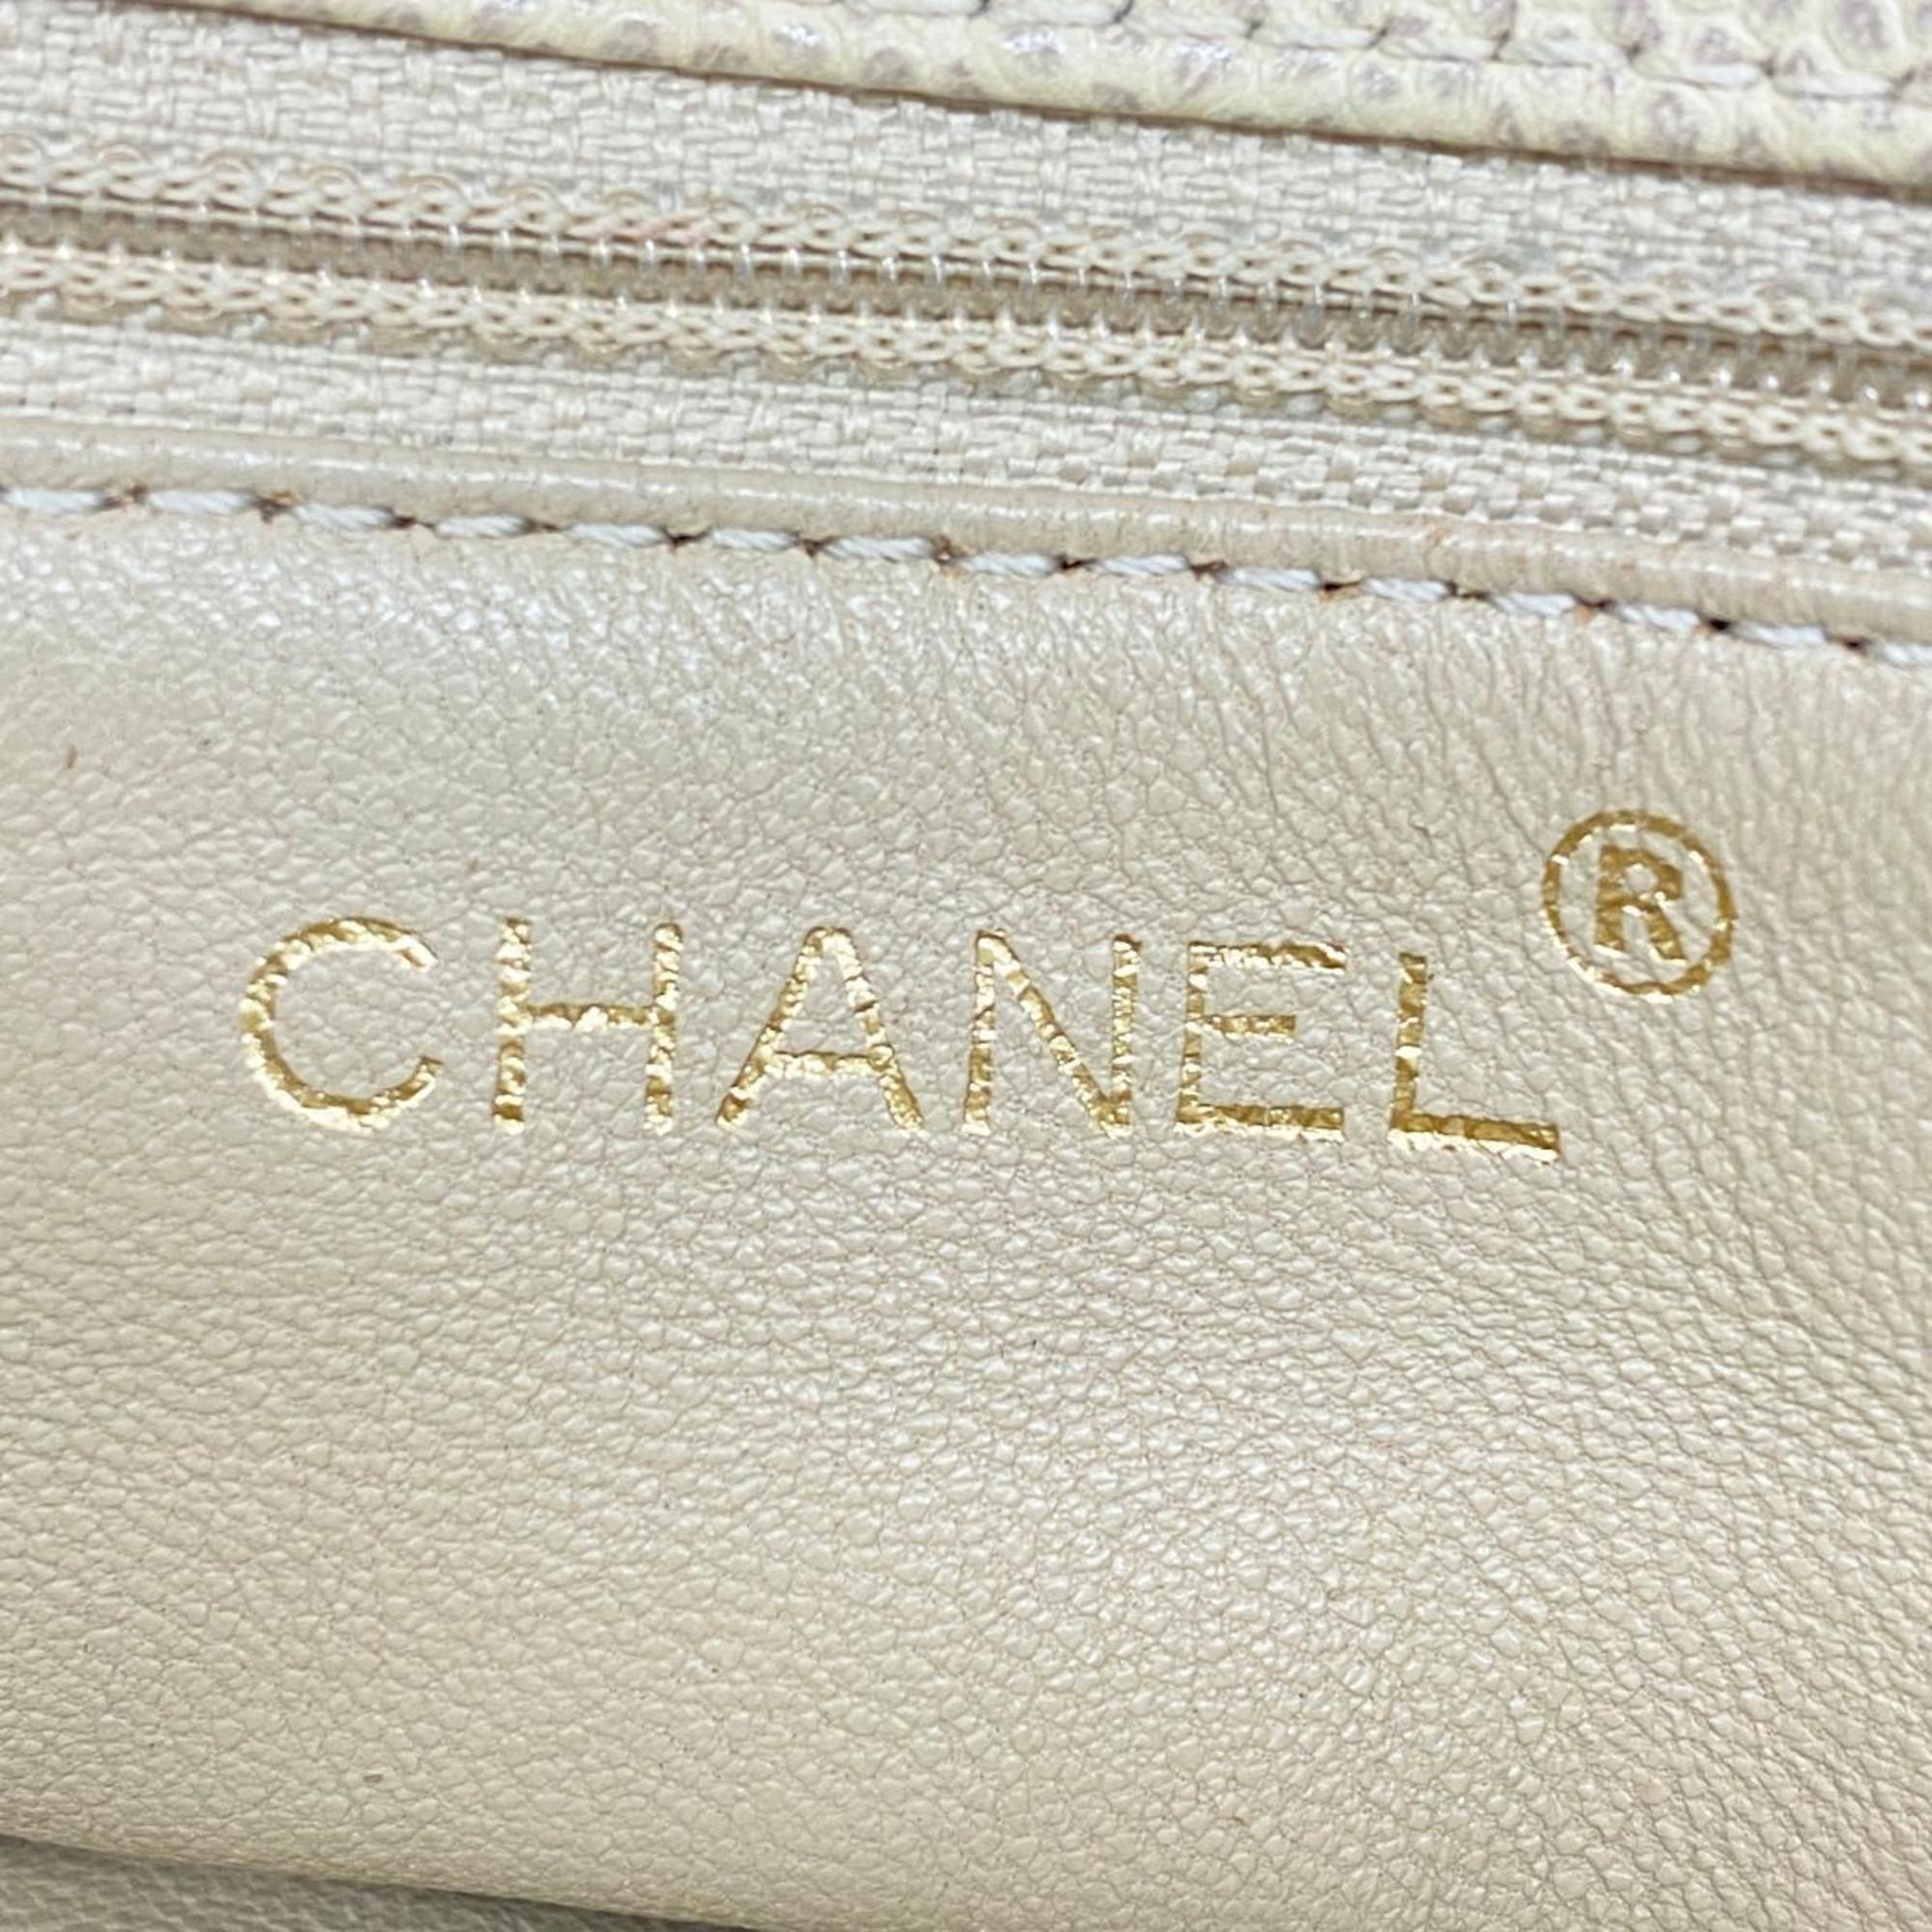 シャネル(Chanel) シャネル トートバッグ マトラッセ キャビアスキン ベージュ  レディース